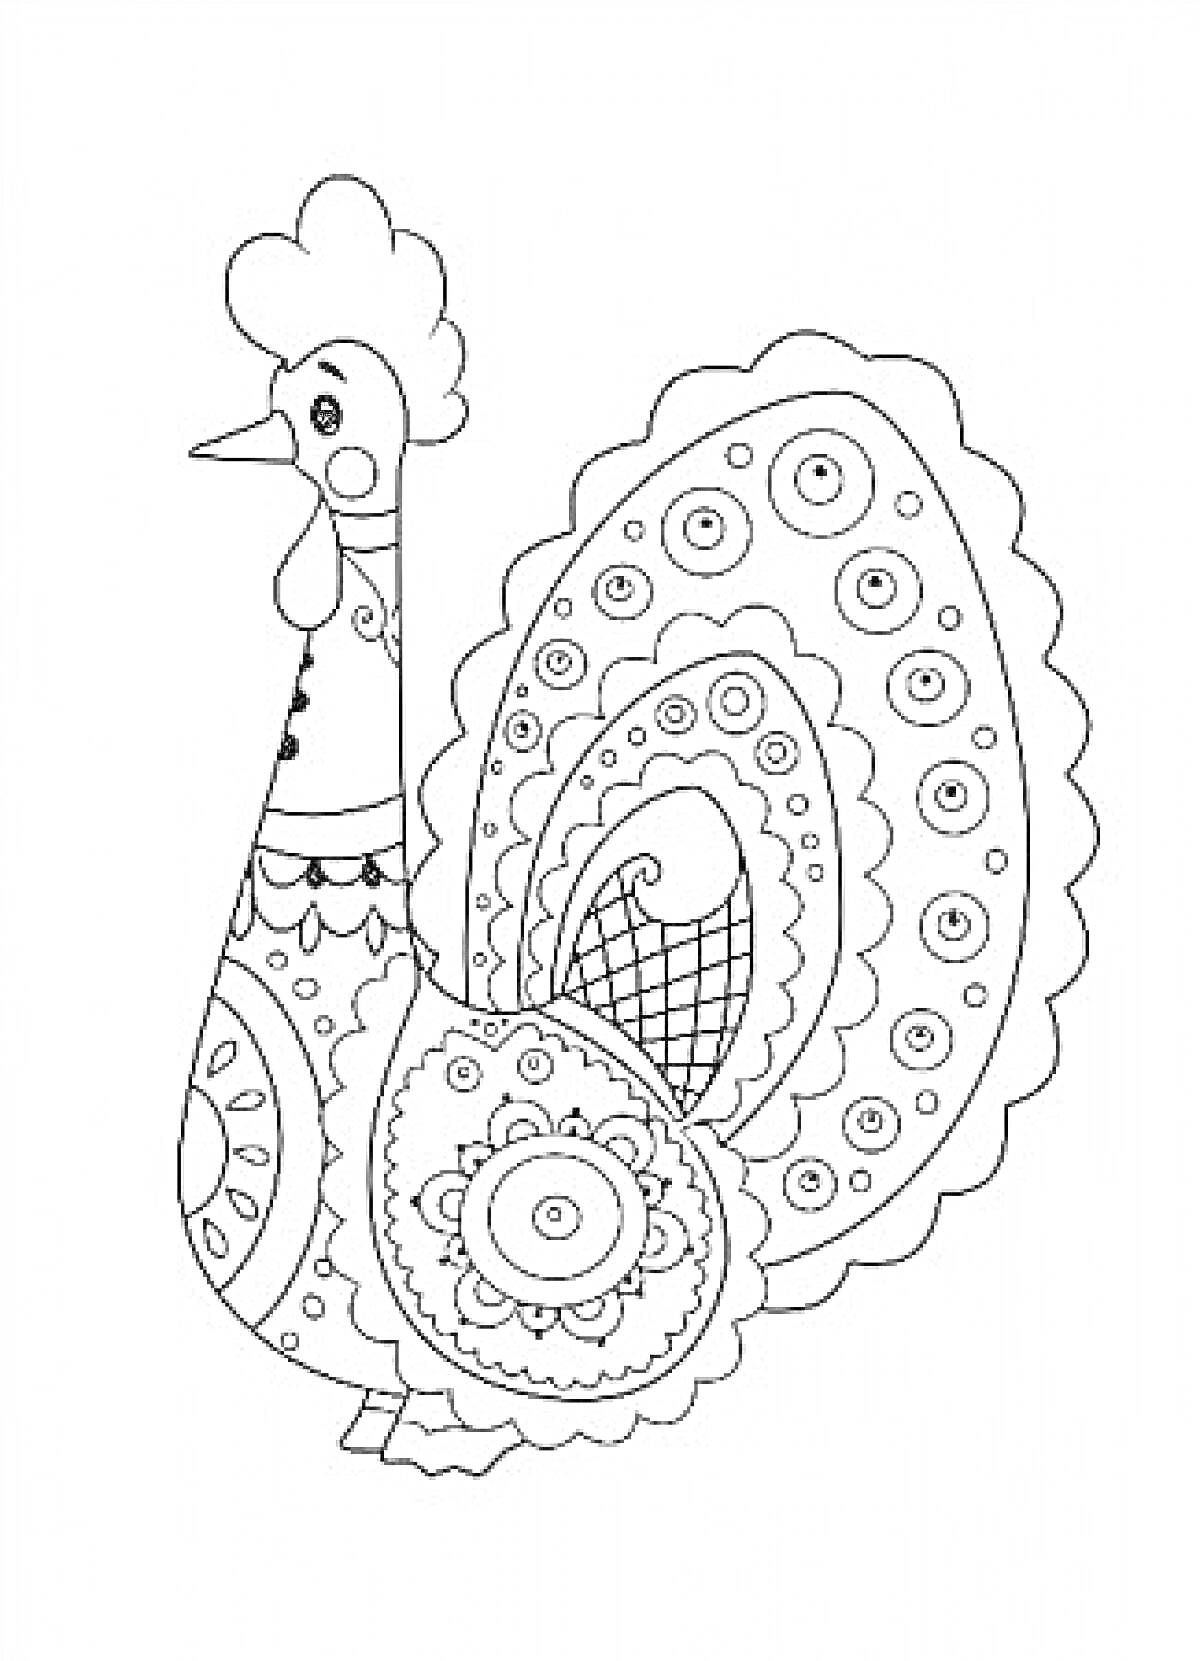 Раскраска Раскраска дымковская игрушка петух с пышным хвостом и узором из кругов и завитков